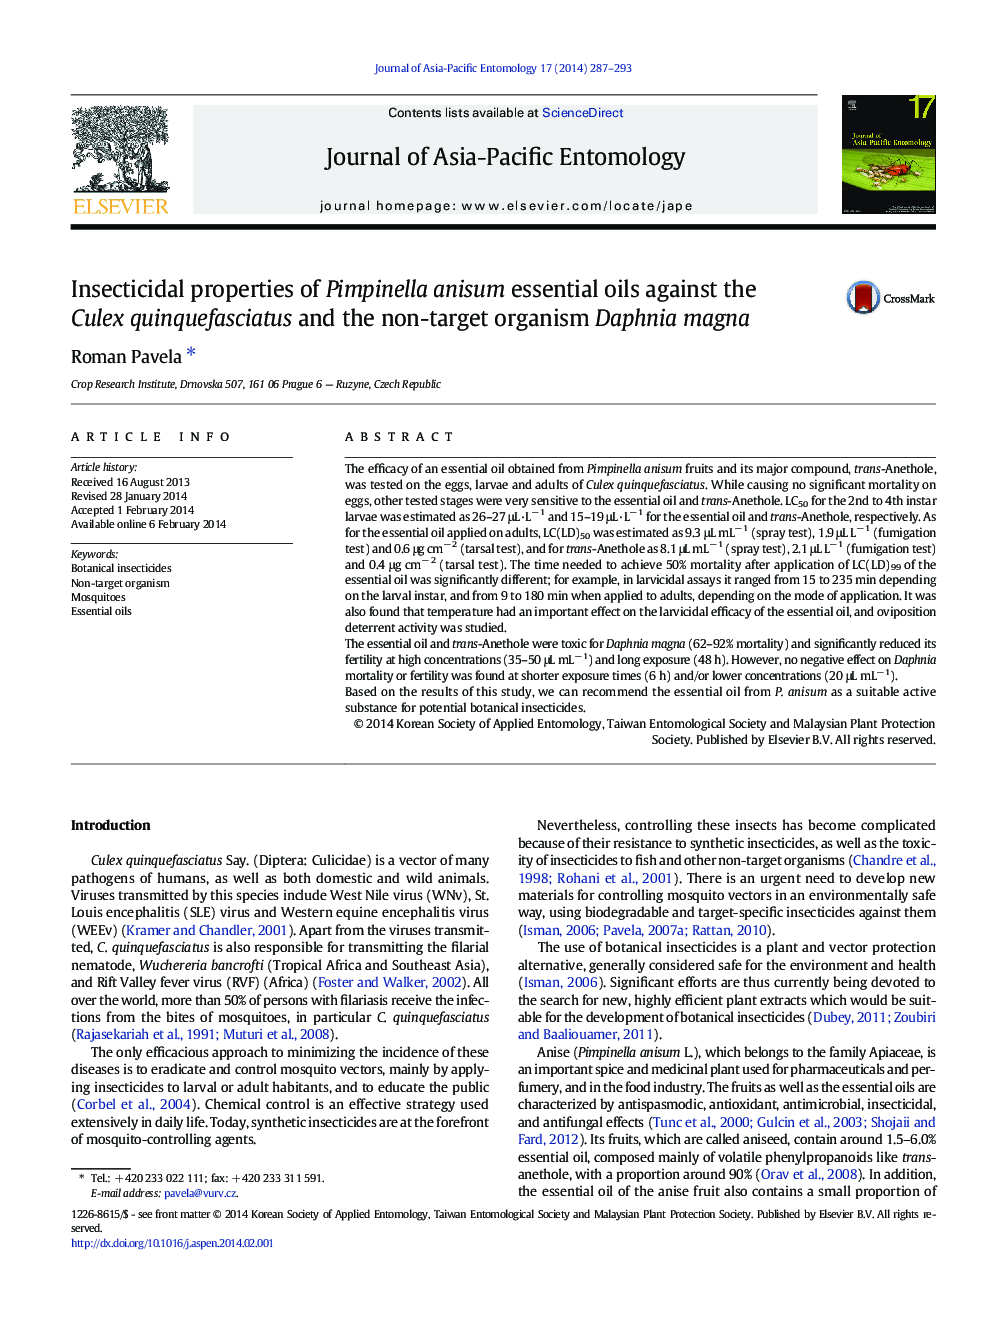 Insecticidal properties of Pimpinella anisum essential oils against the Culex quinquefasciatus and the non-target organism Daphnia magna